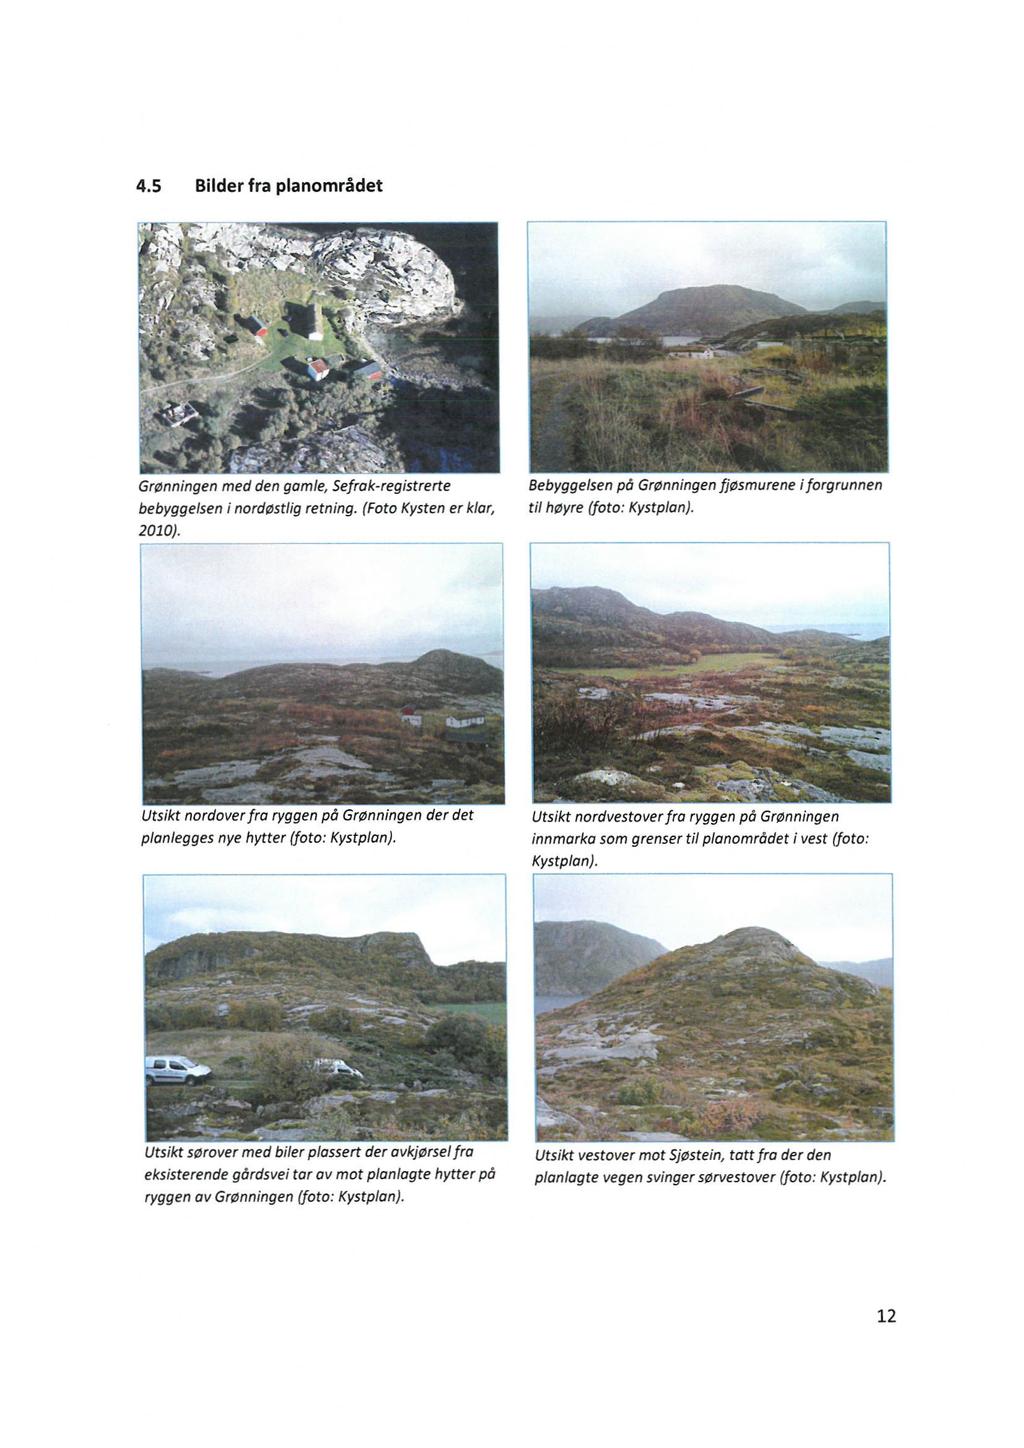 4.5 Bilder fra planområdet Grønningen med den gamle, Sefrok-registrerte bebyggelsen i nordøstlig retning. (Foto Kysten er klar, 2010).